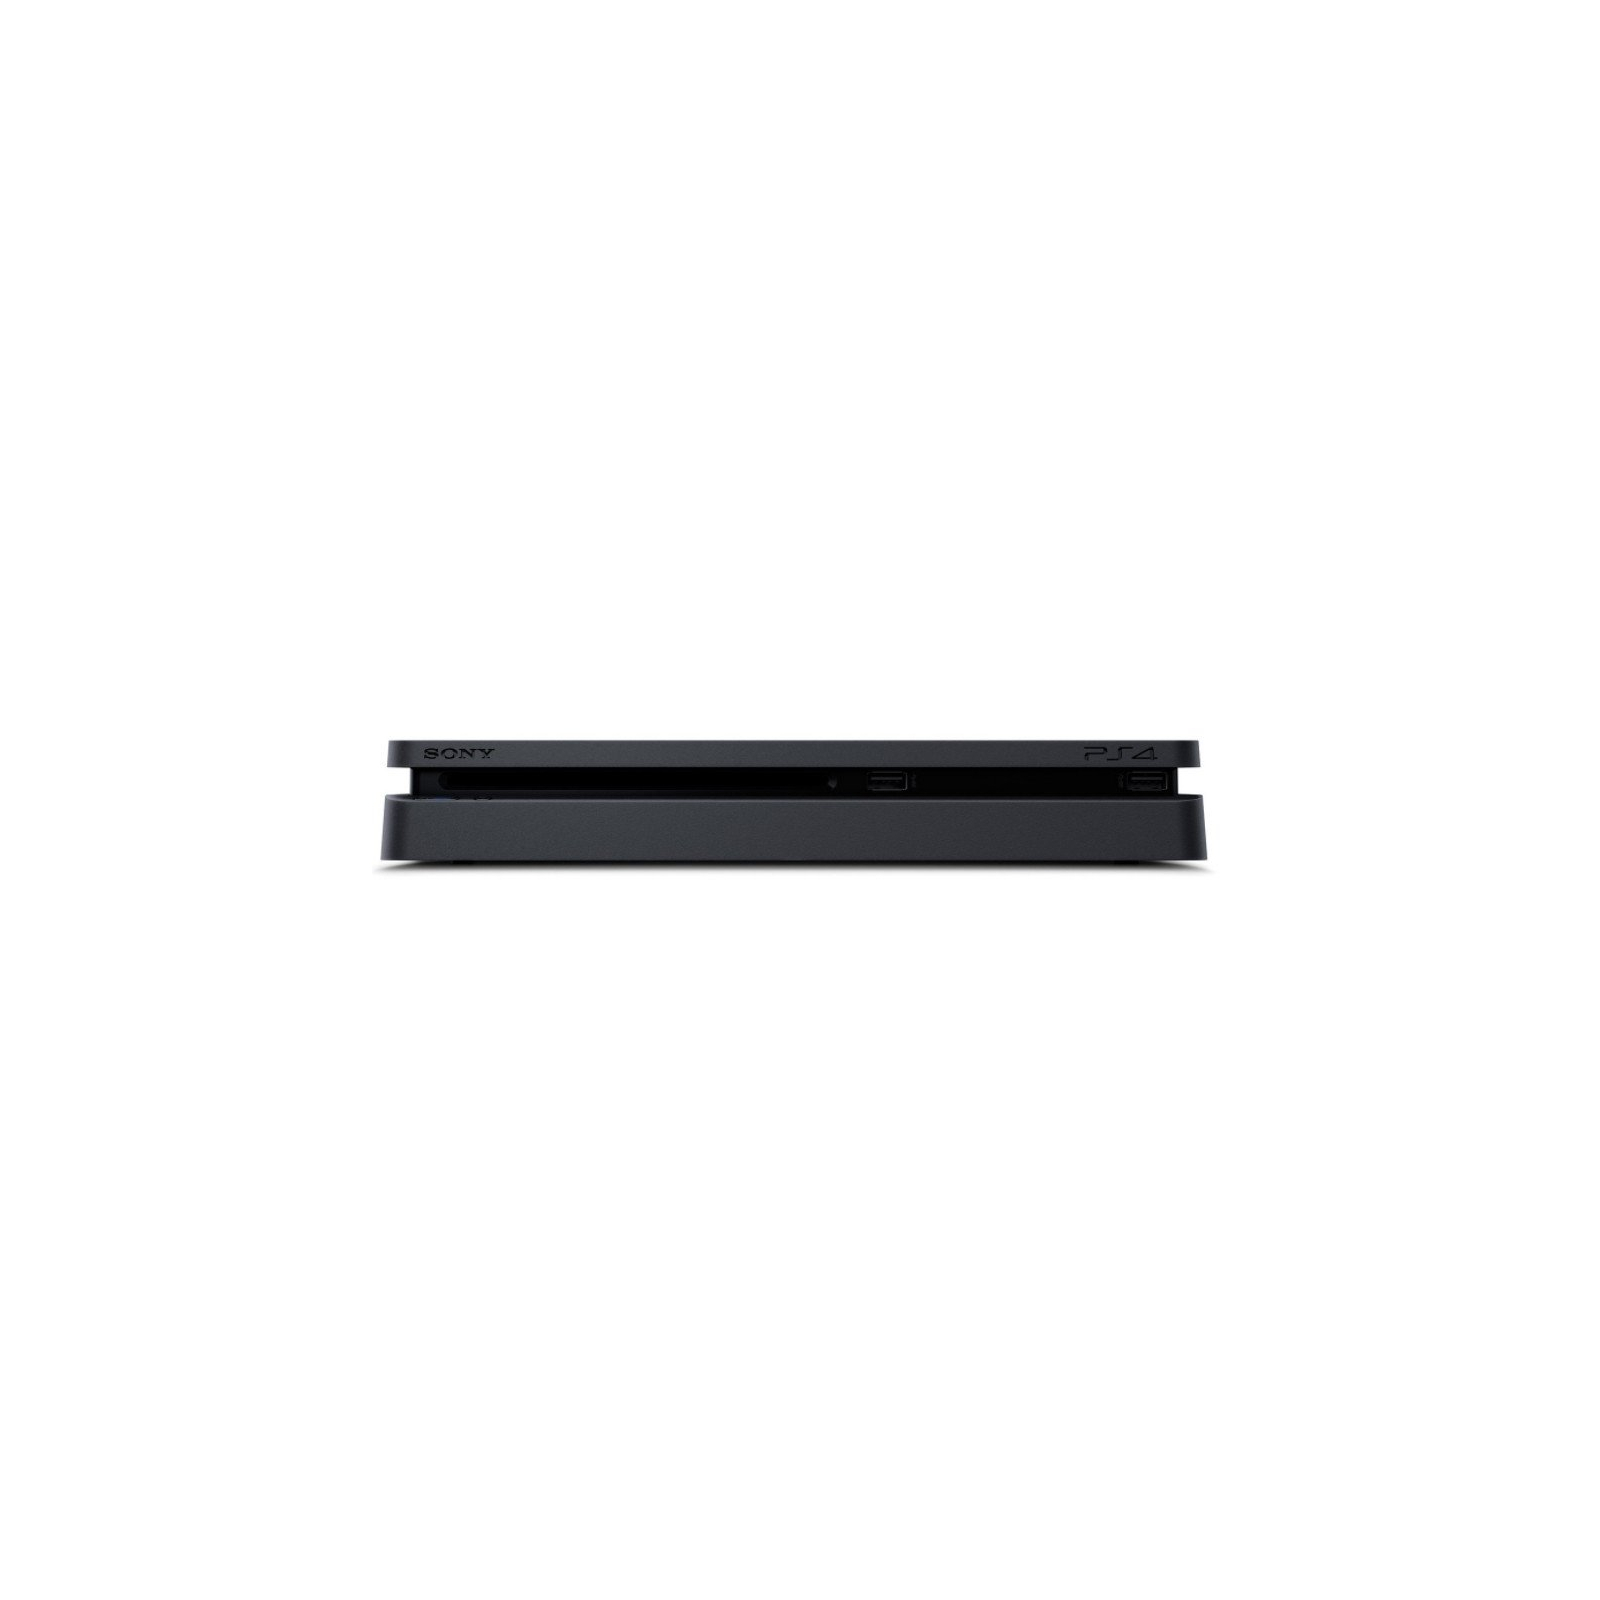 Игровая консоль Sony PlayStation 4 Slim 1Tb Black (Gran Turismo) (9907367) изображение 6